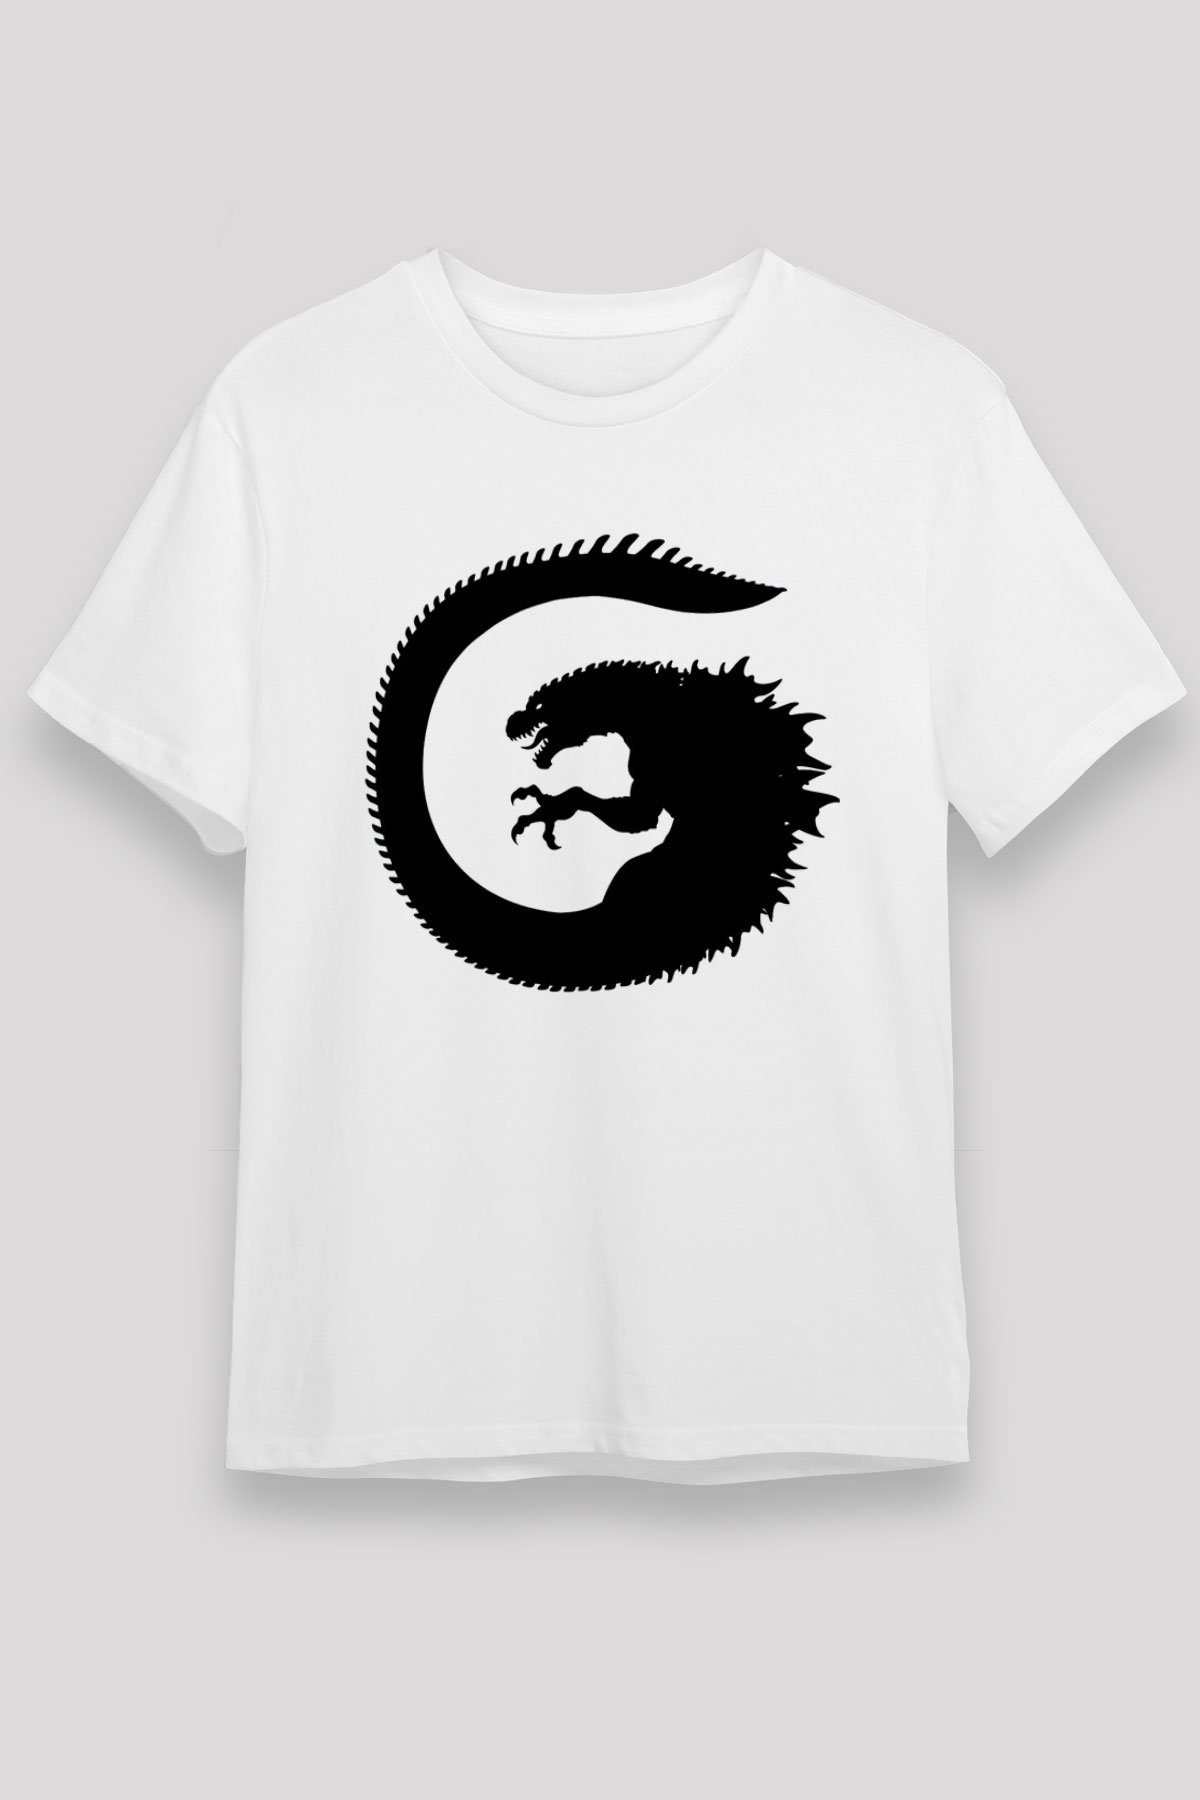 Godzilla Beyaz Unisex Tişört T-Shirt